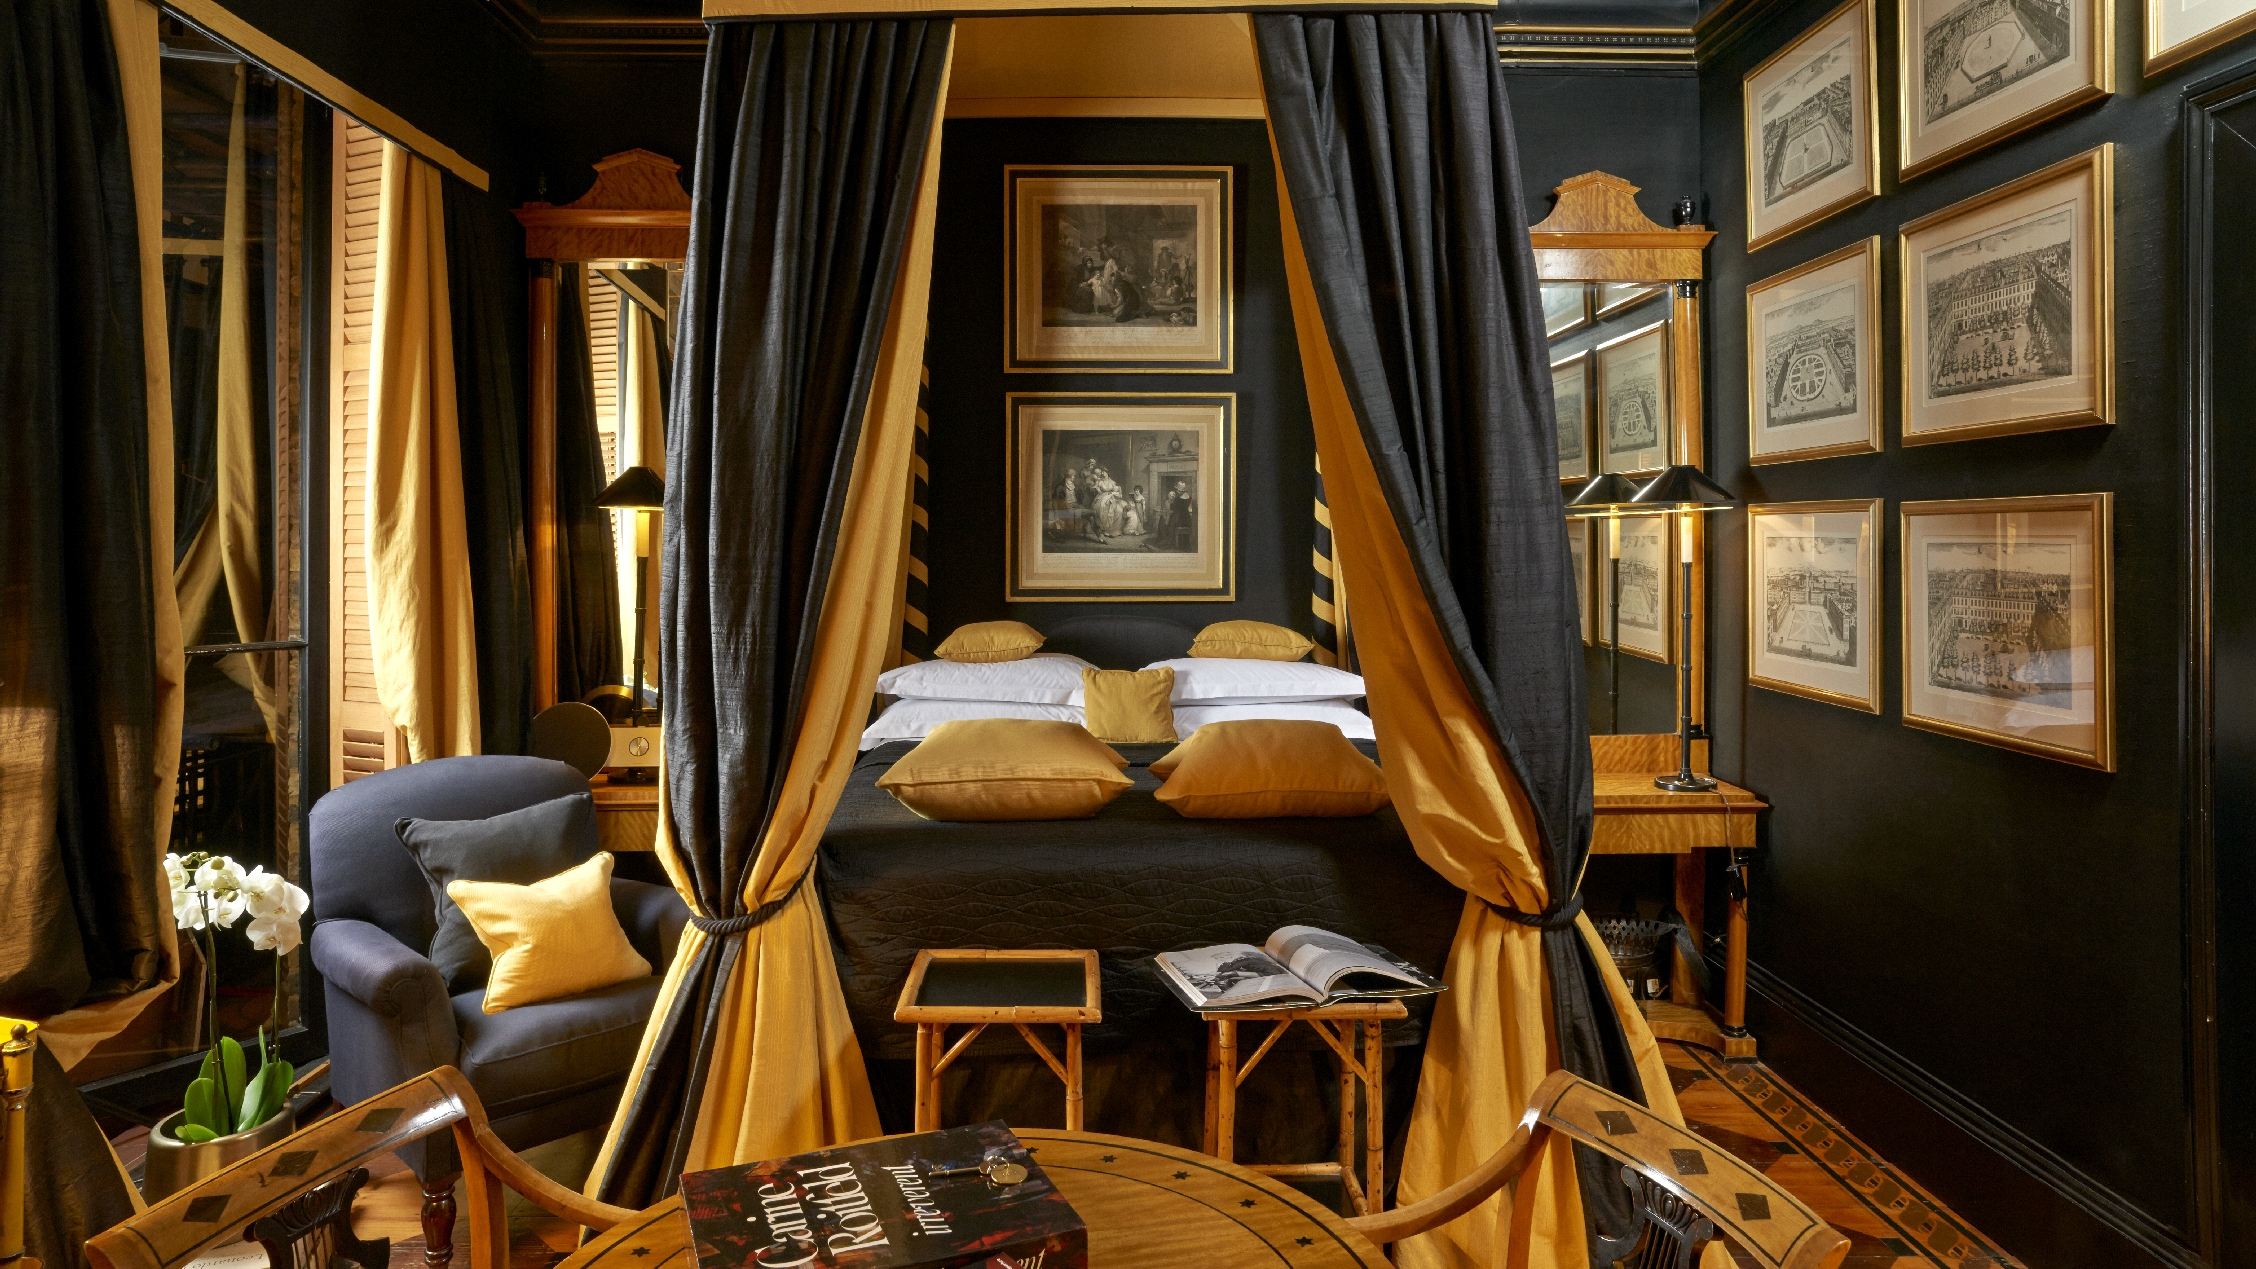 Romantika se rozhodně nemusí pojit jen s rudou barvou. Příznivce střízlivějších odstínů tak určitě potěší Directors Double Suite v londýnském hotelu Blakes.